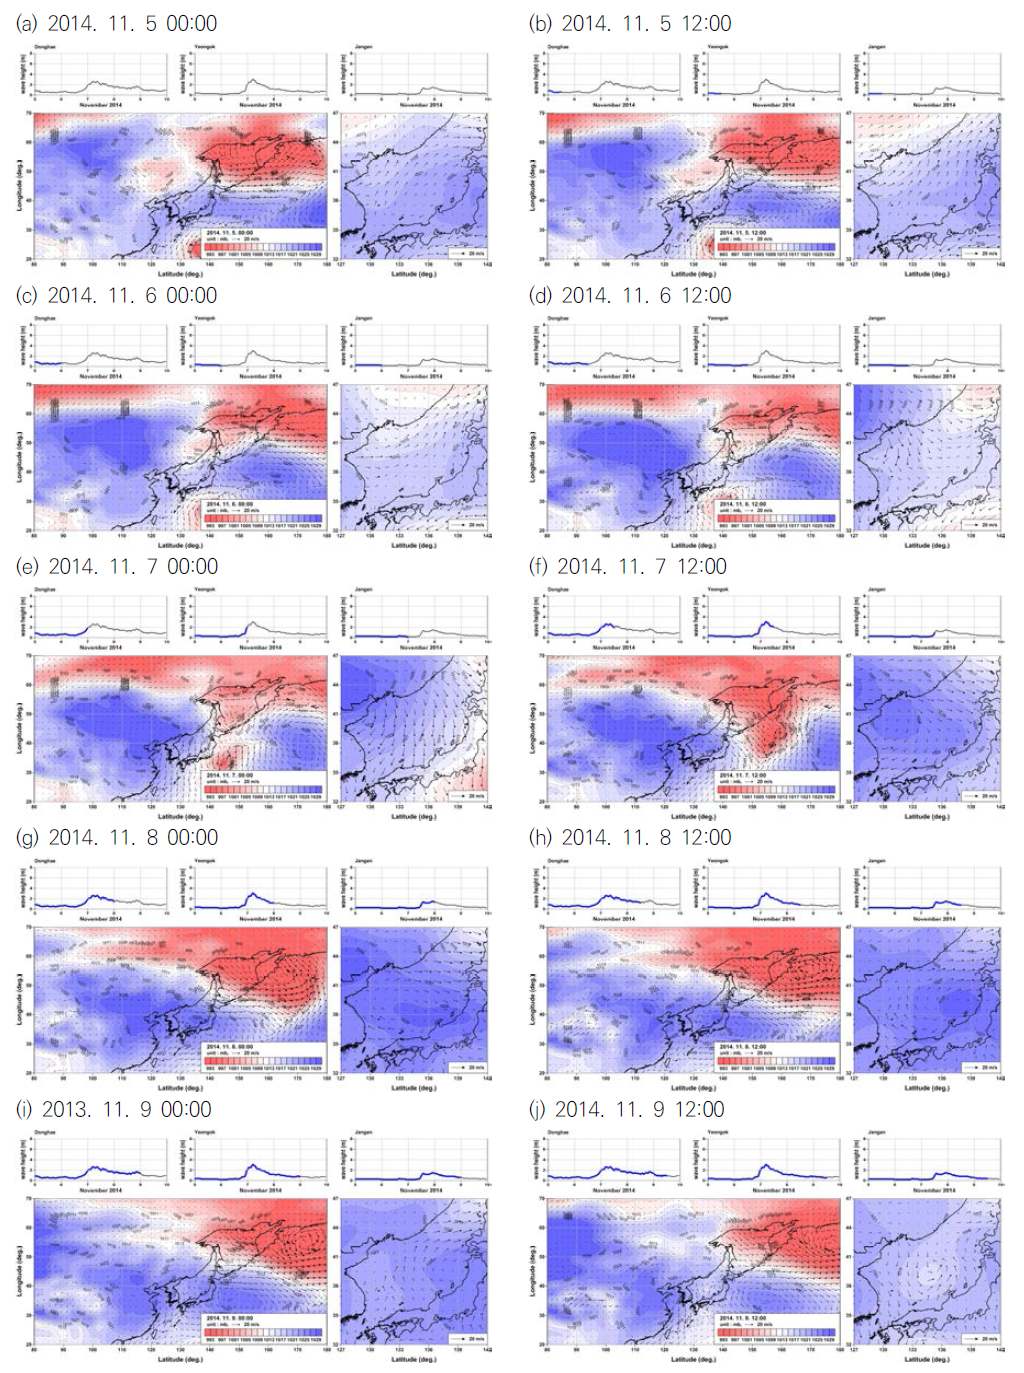 동해안 파고시계열 및 한반도 인근 기압배치와 해상풍 벡터도(2014. 11)